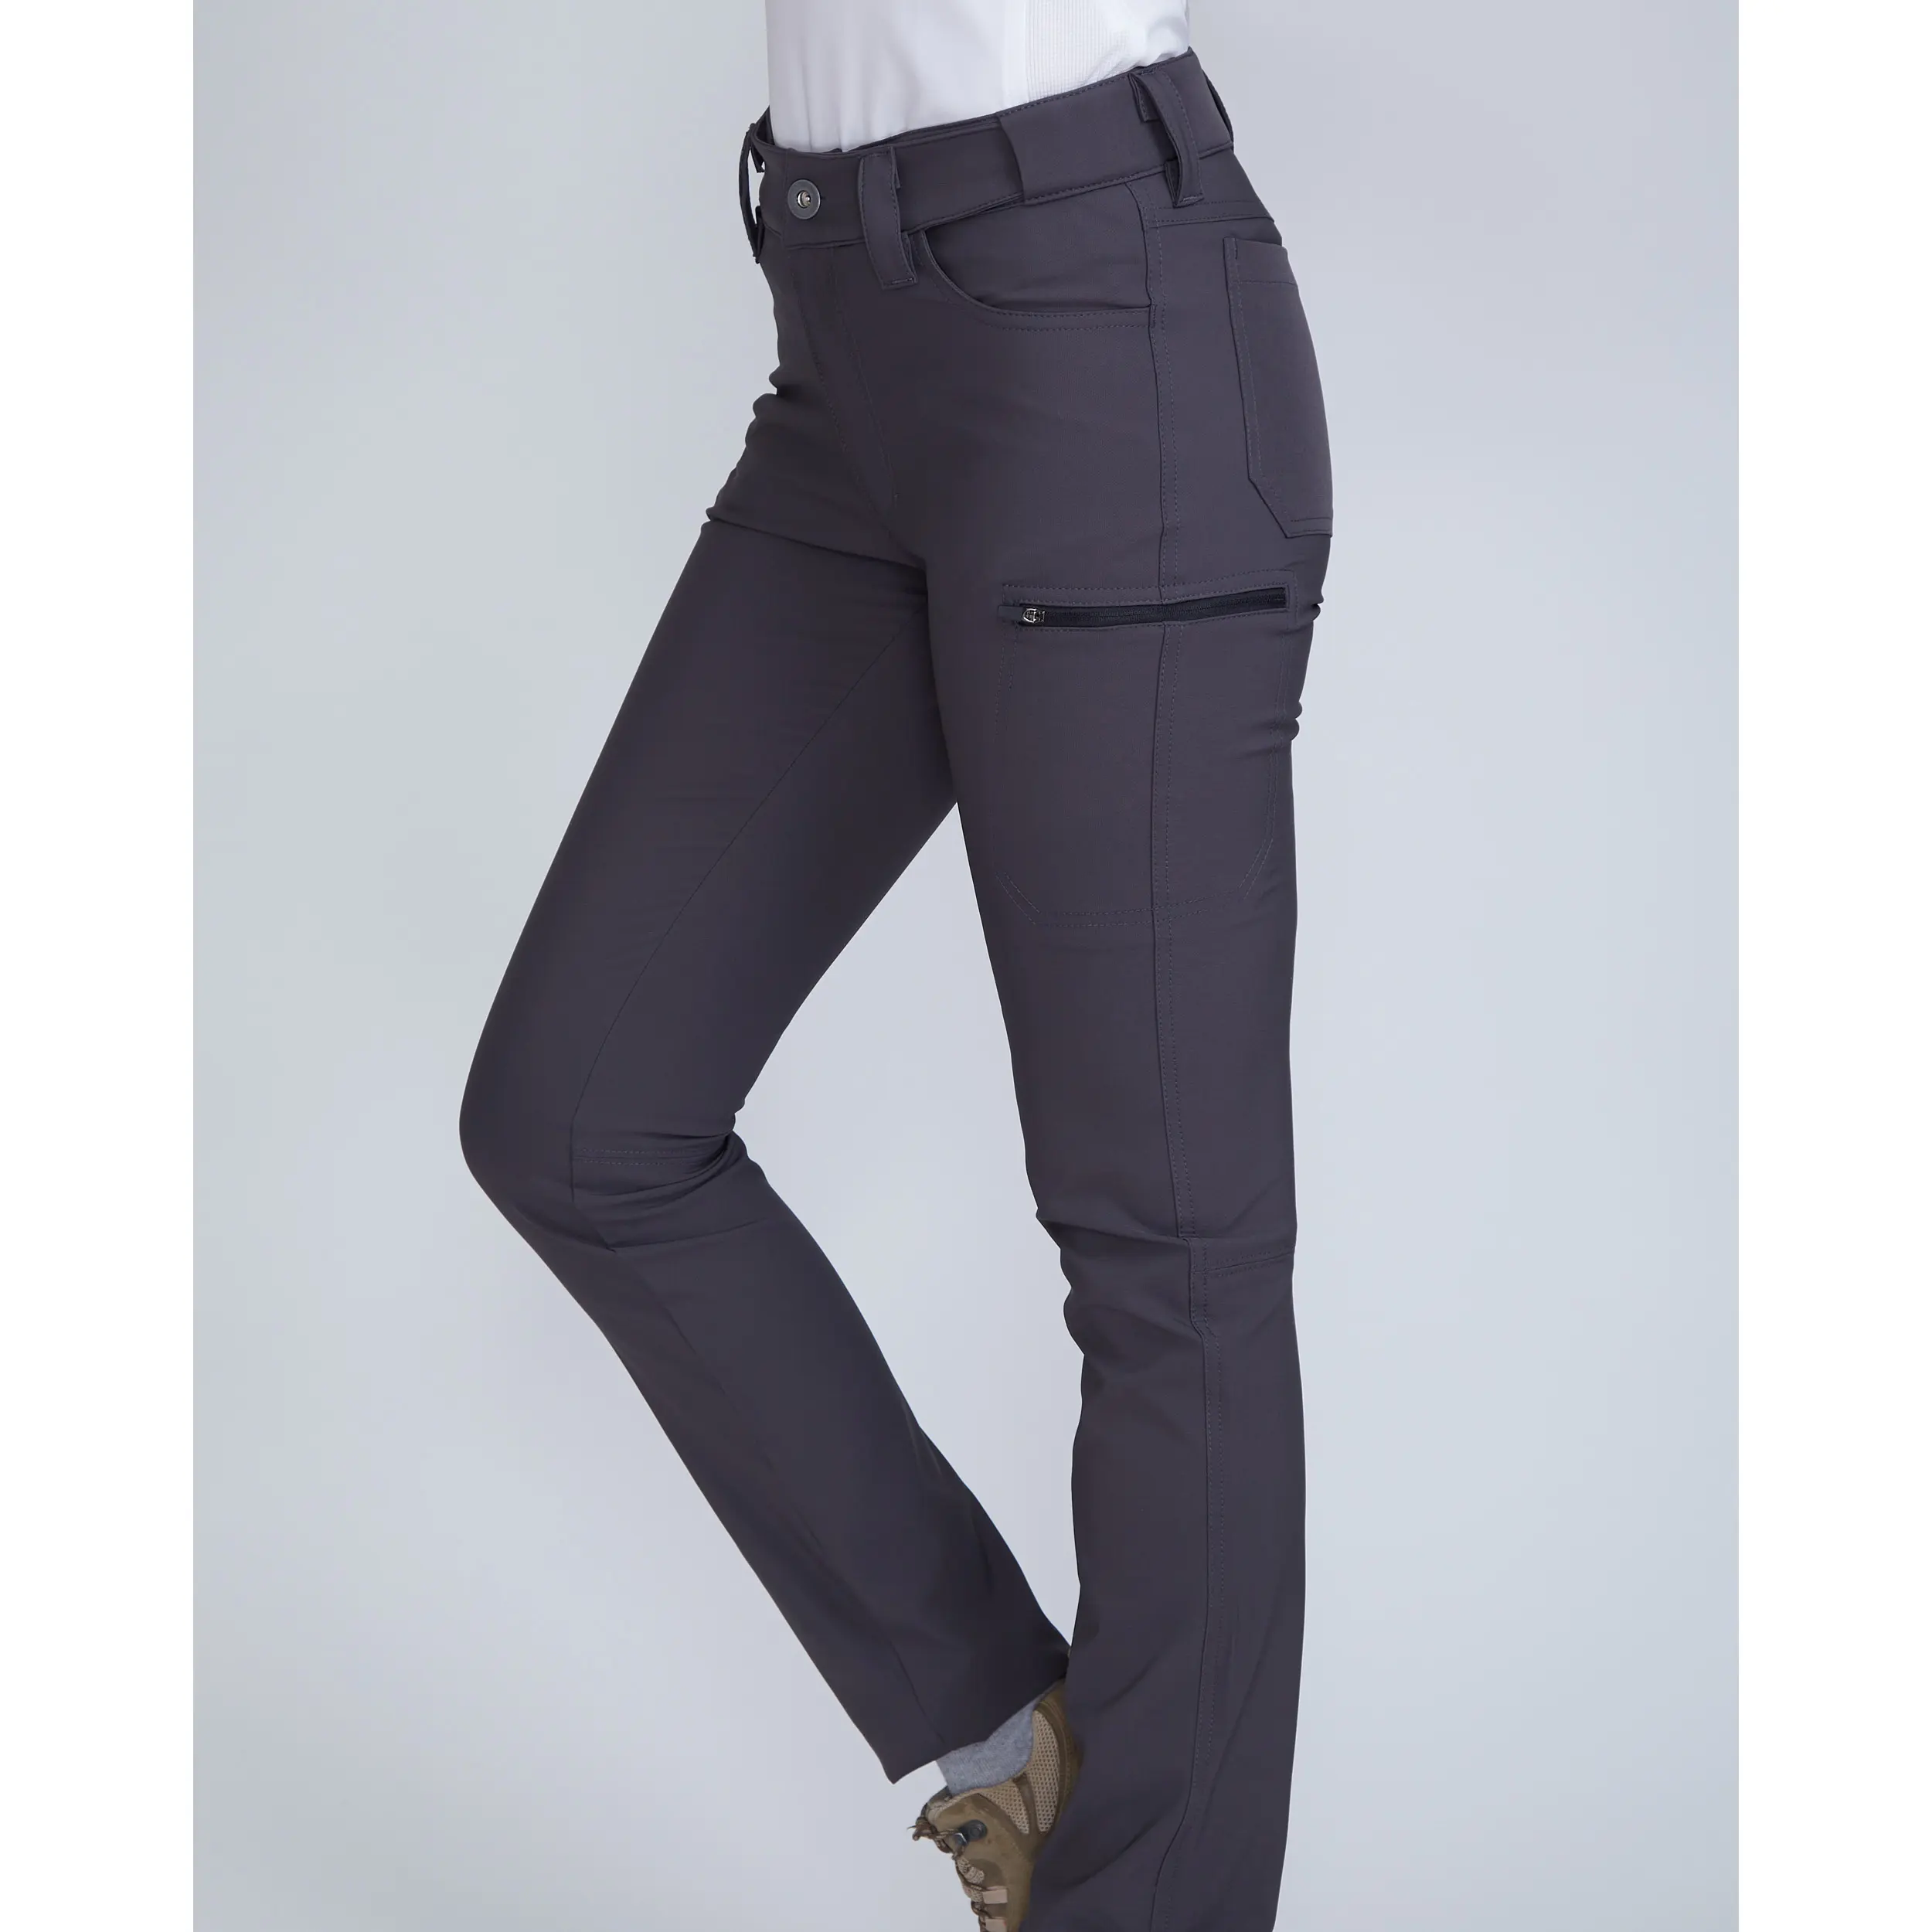 Pantalón versátil para hombre y pantalones cortos convertibles con cintura ajustable